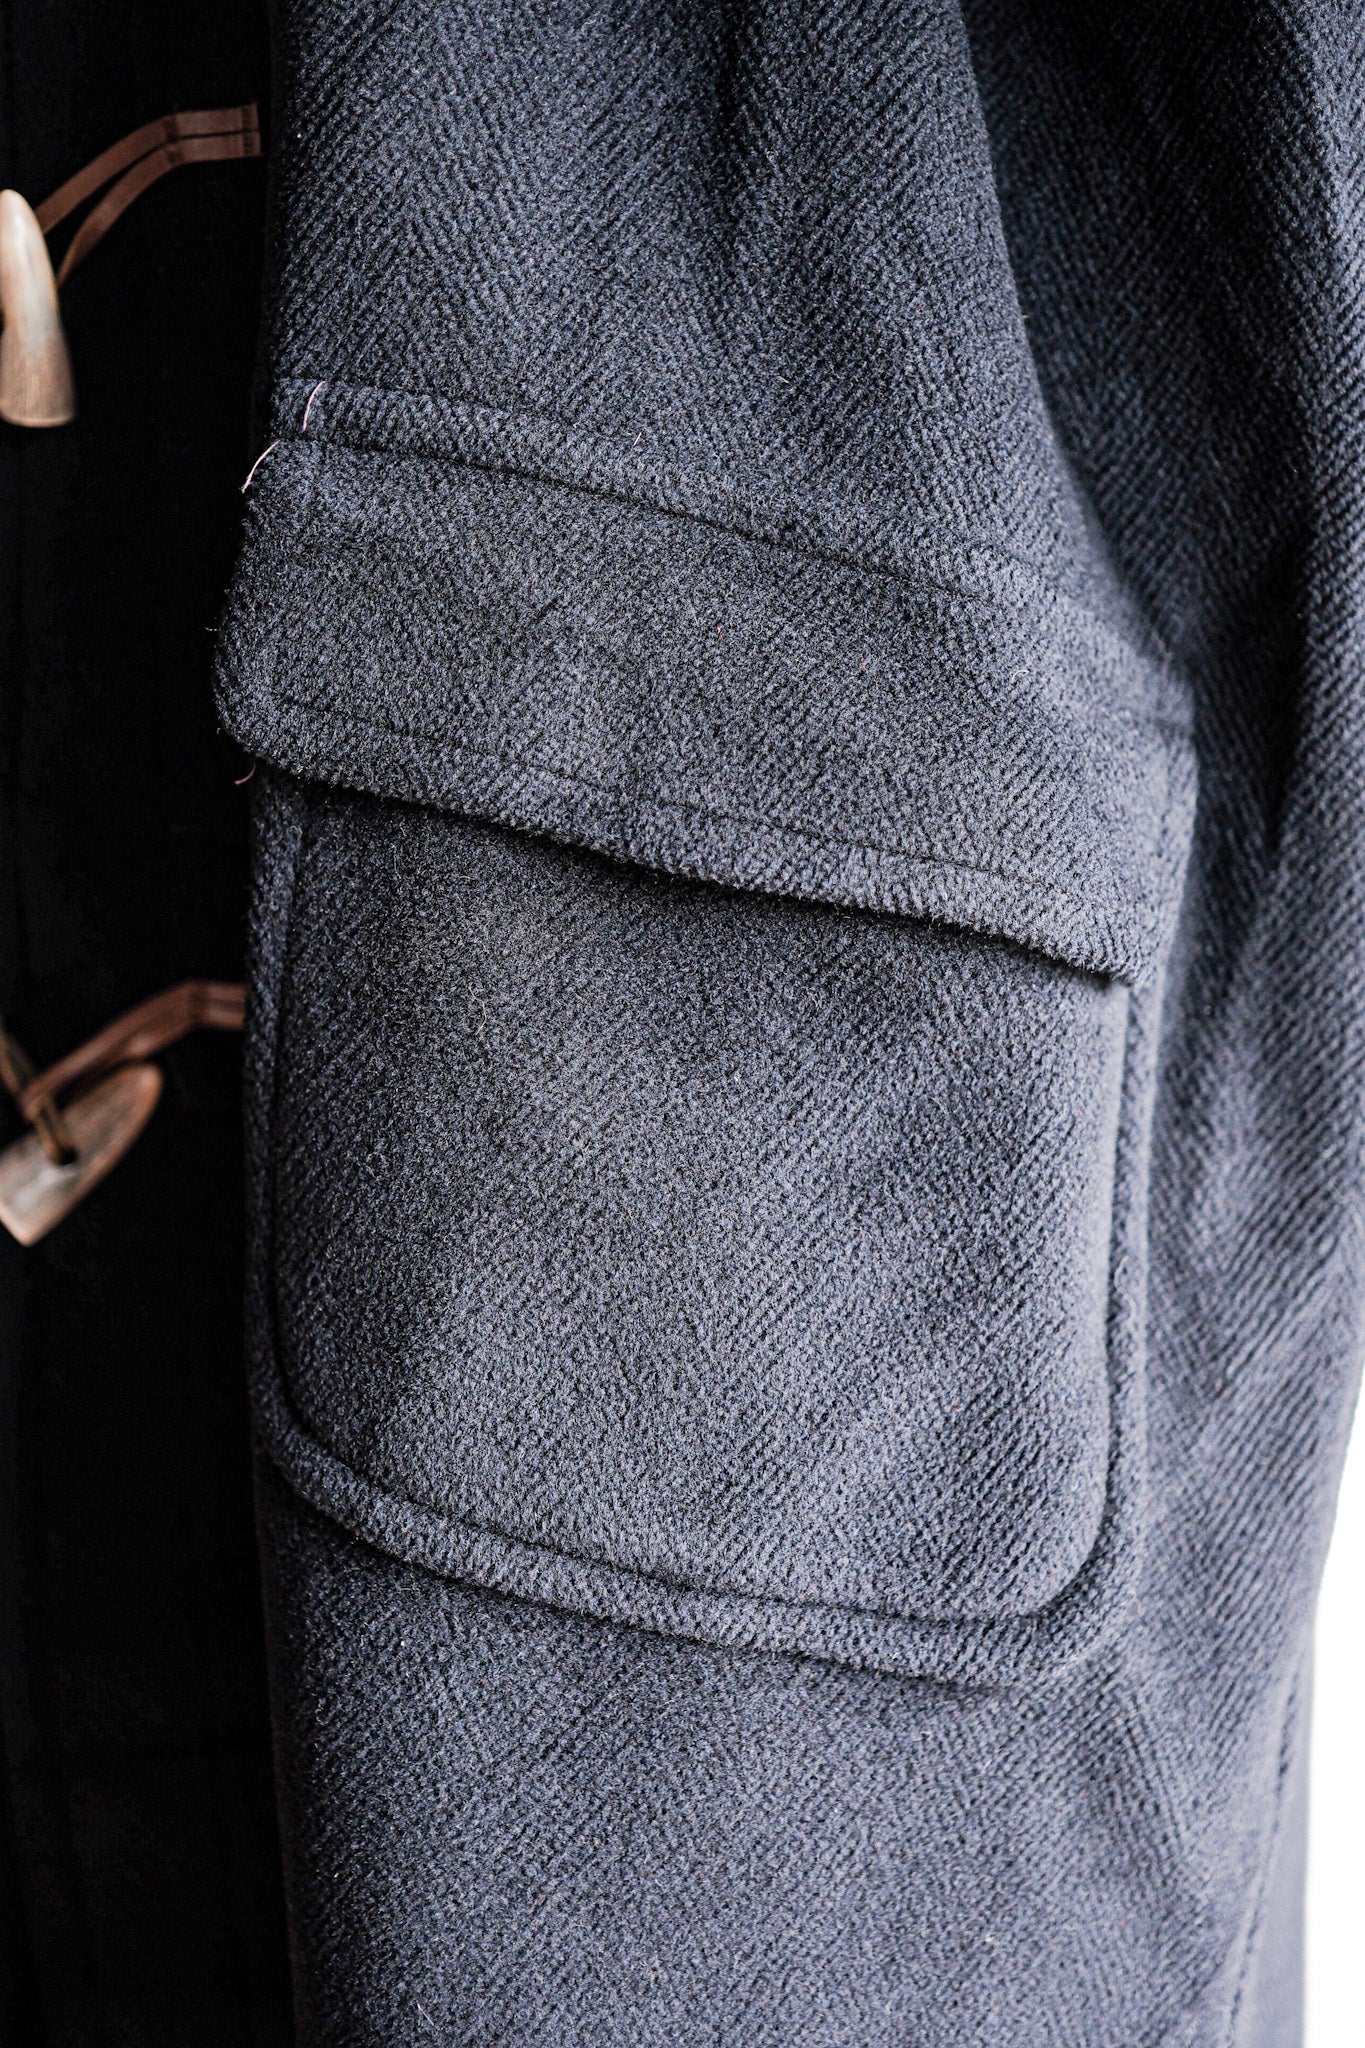 [〜90年代]復古格倫費爾羊毛行李外套的尺寸。44“ Moorbrook”